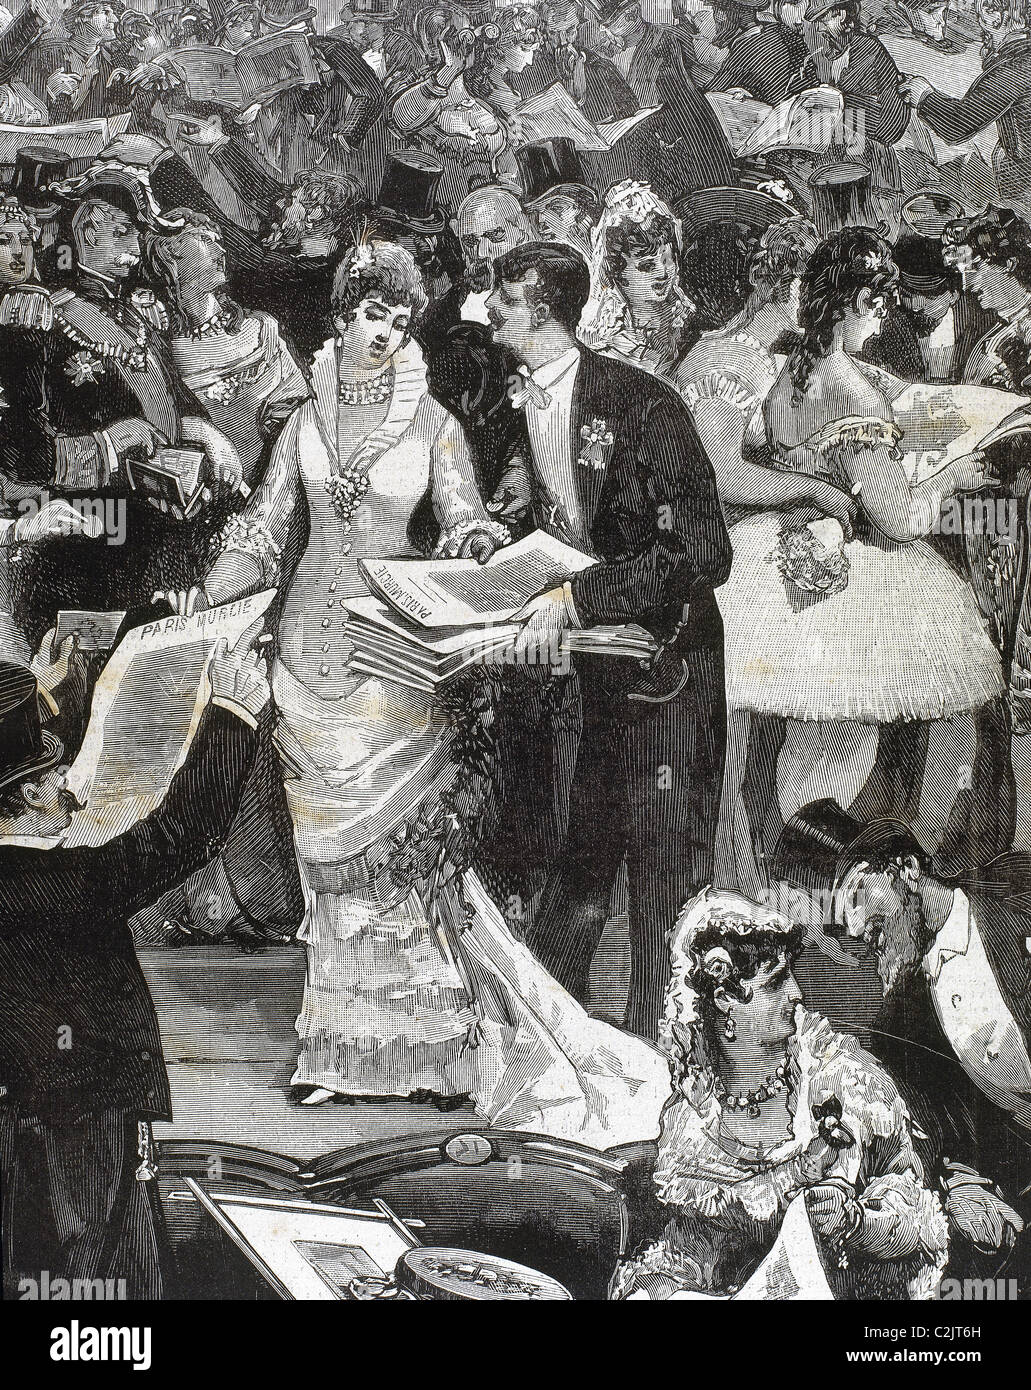 La vendita di quotidiano 'Paris-Murcie' nell'ippodromo di Madrid. Diciannovesimo secolo incisione. Foto Stock